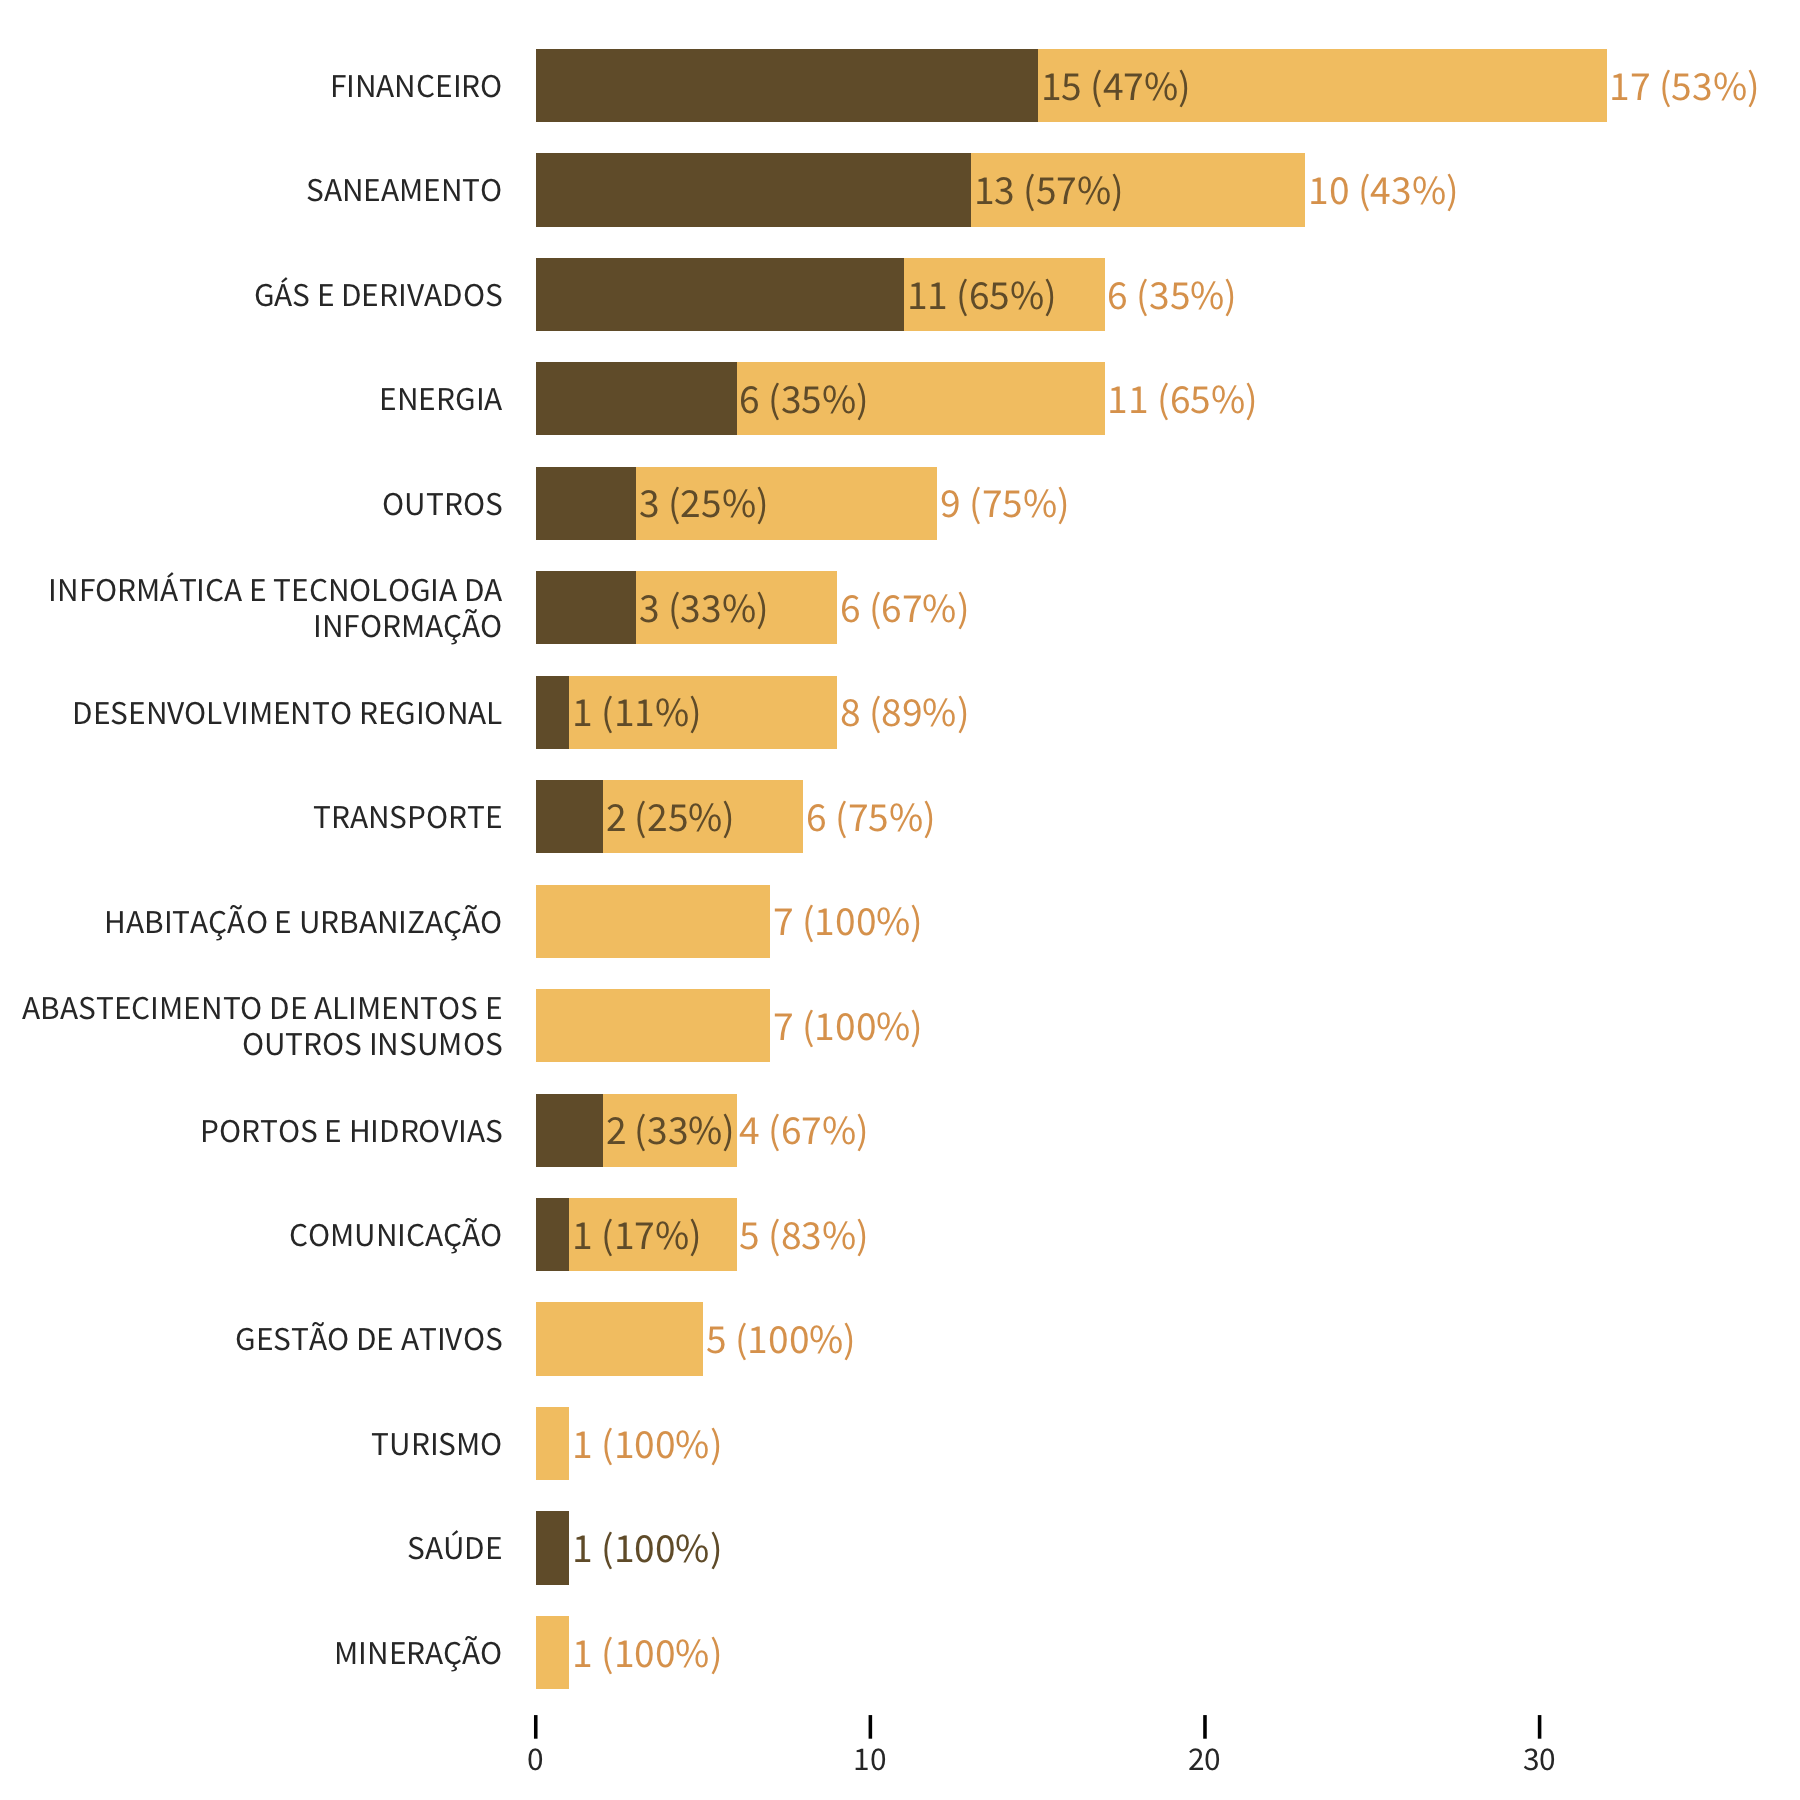 Visualização da quantidade de empresas que pagaram ou não participação nos lucros, para cada setor, na forma de um gráfico de barras empilhado.